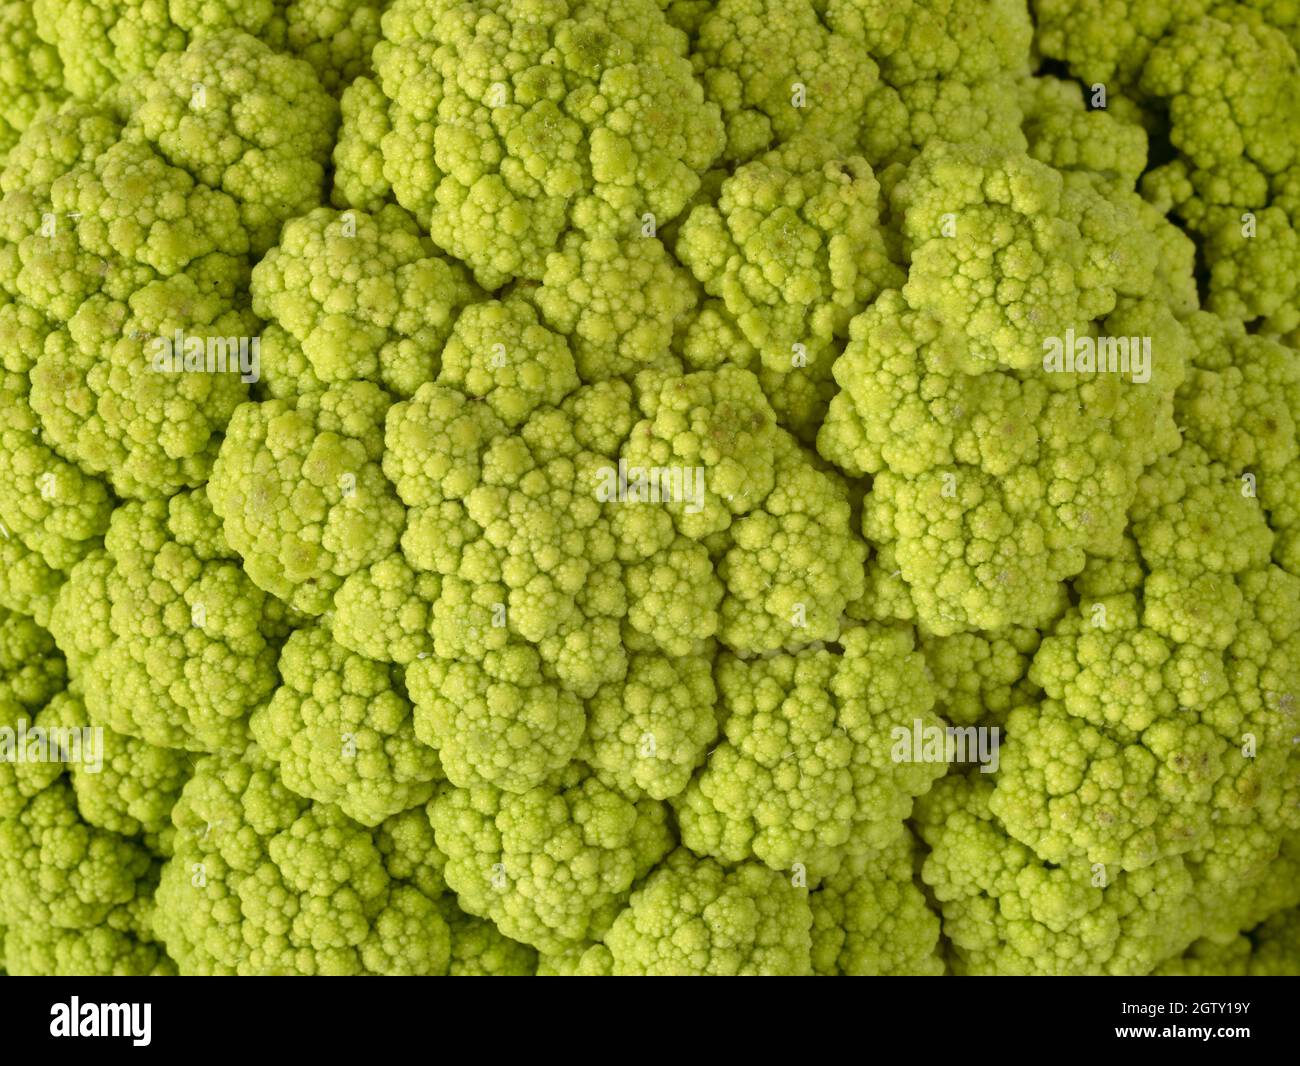 Full Frame Shot Of Green Cauliflower Stock Photo